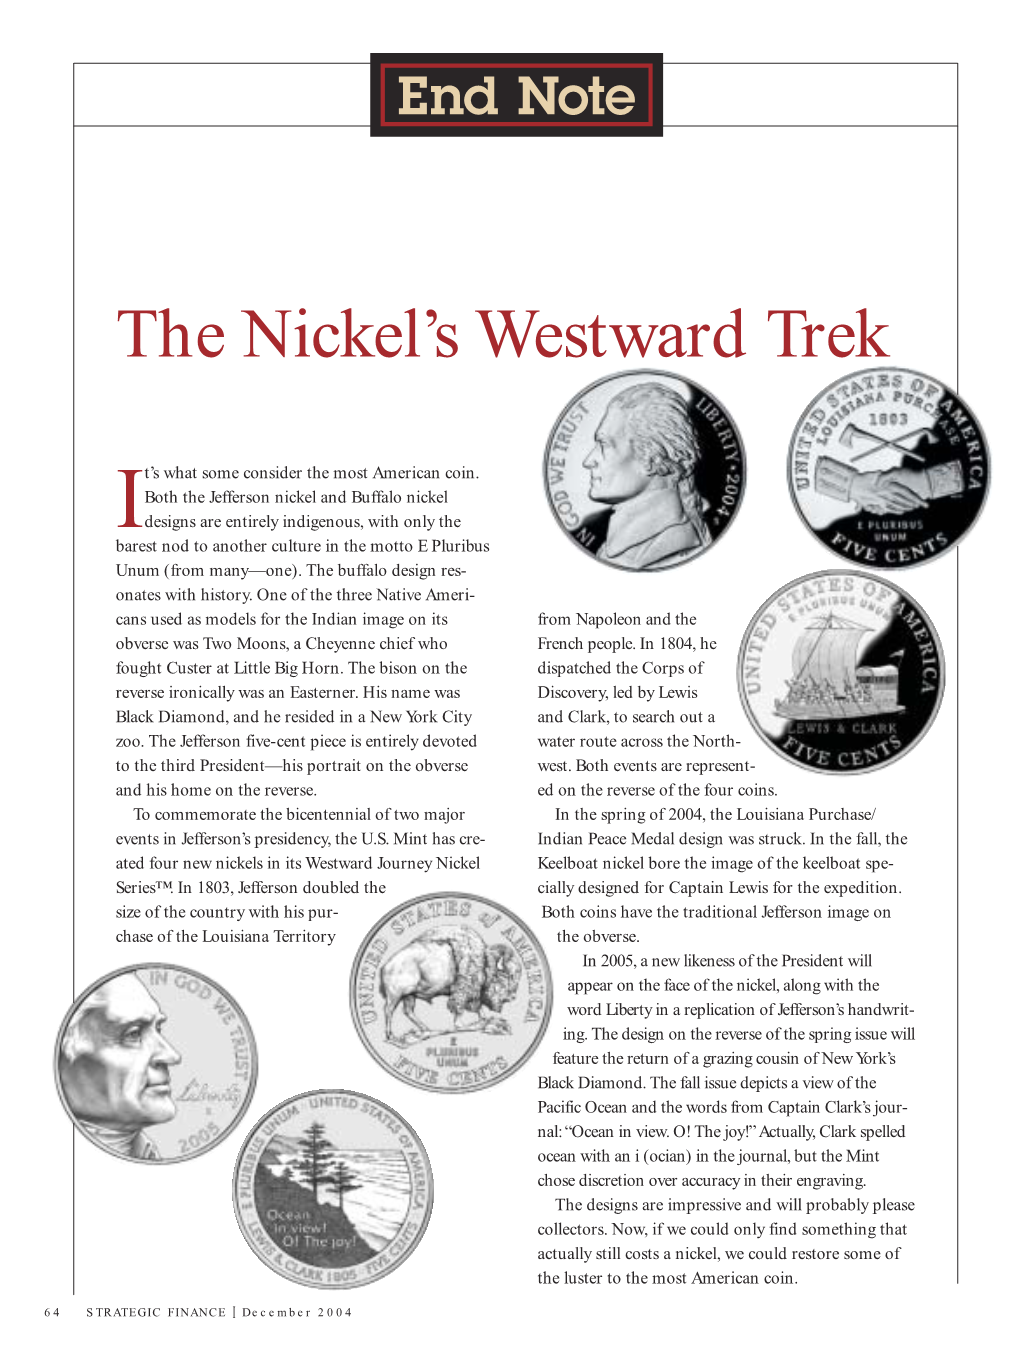 The Nickel's Westward Trek